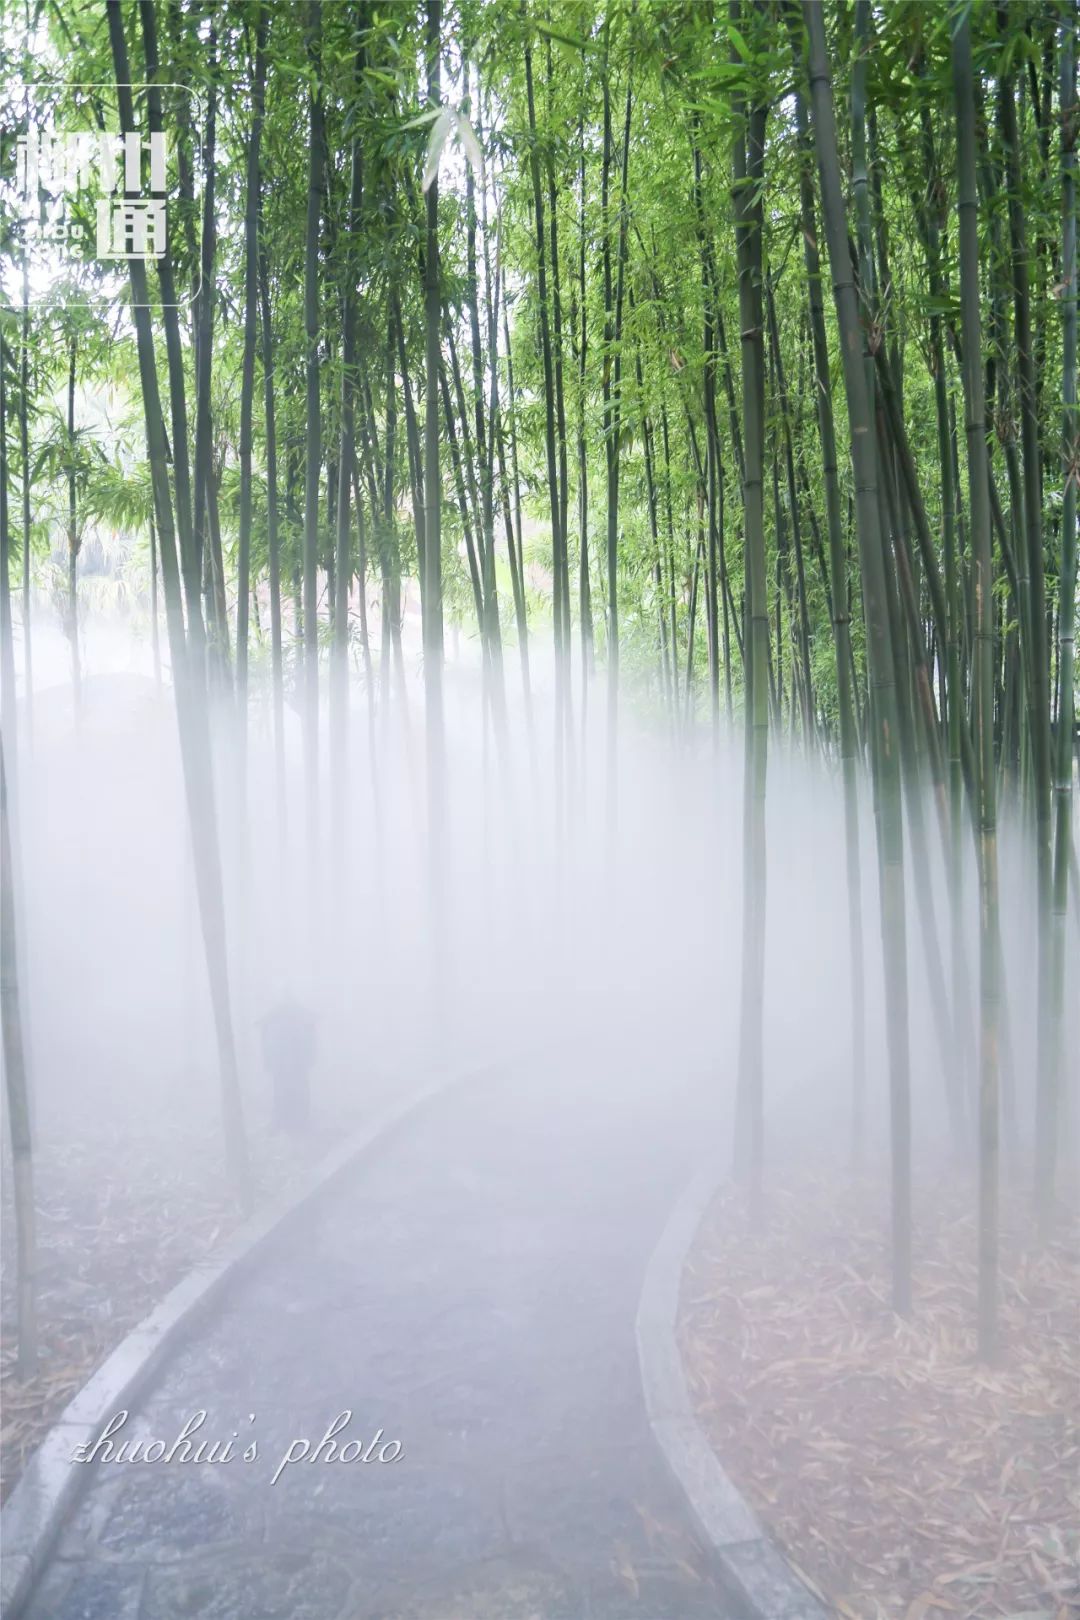 幽幽紫竹林,缥缈仙境处 悠远静谧的绿竹,加上腾腾升起白雾 最适合穿